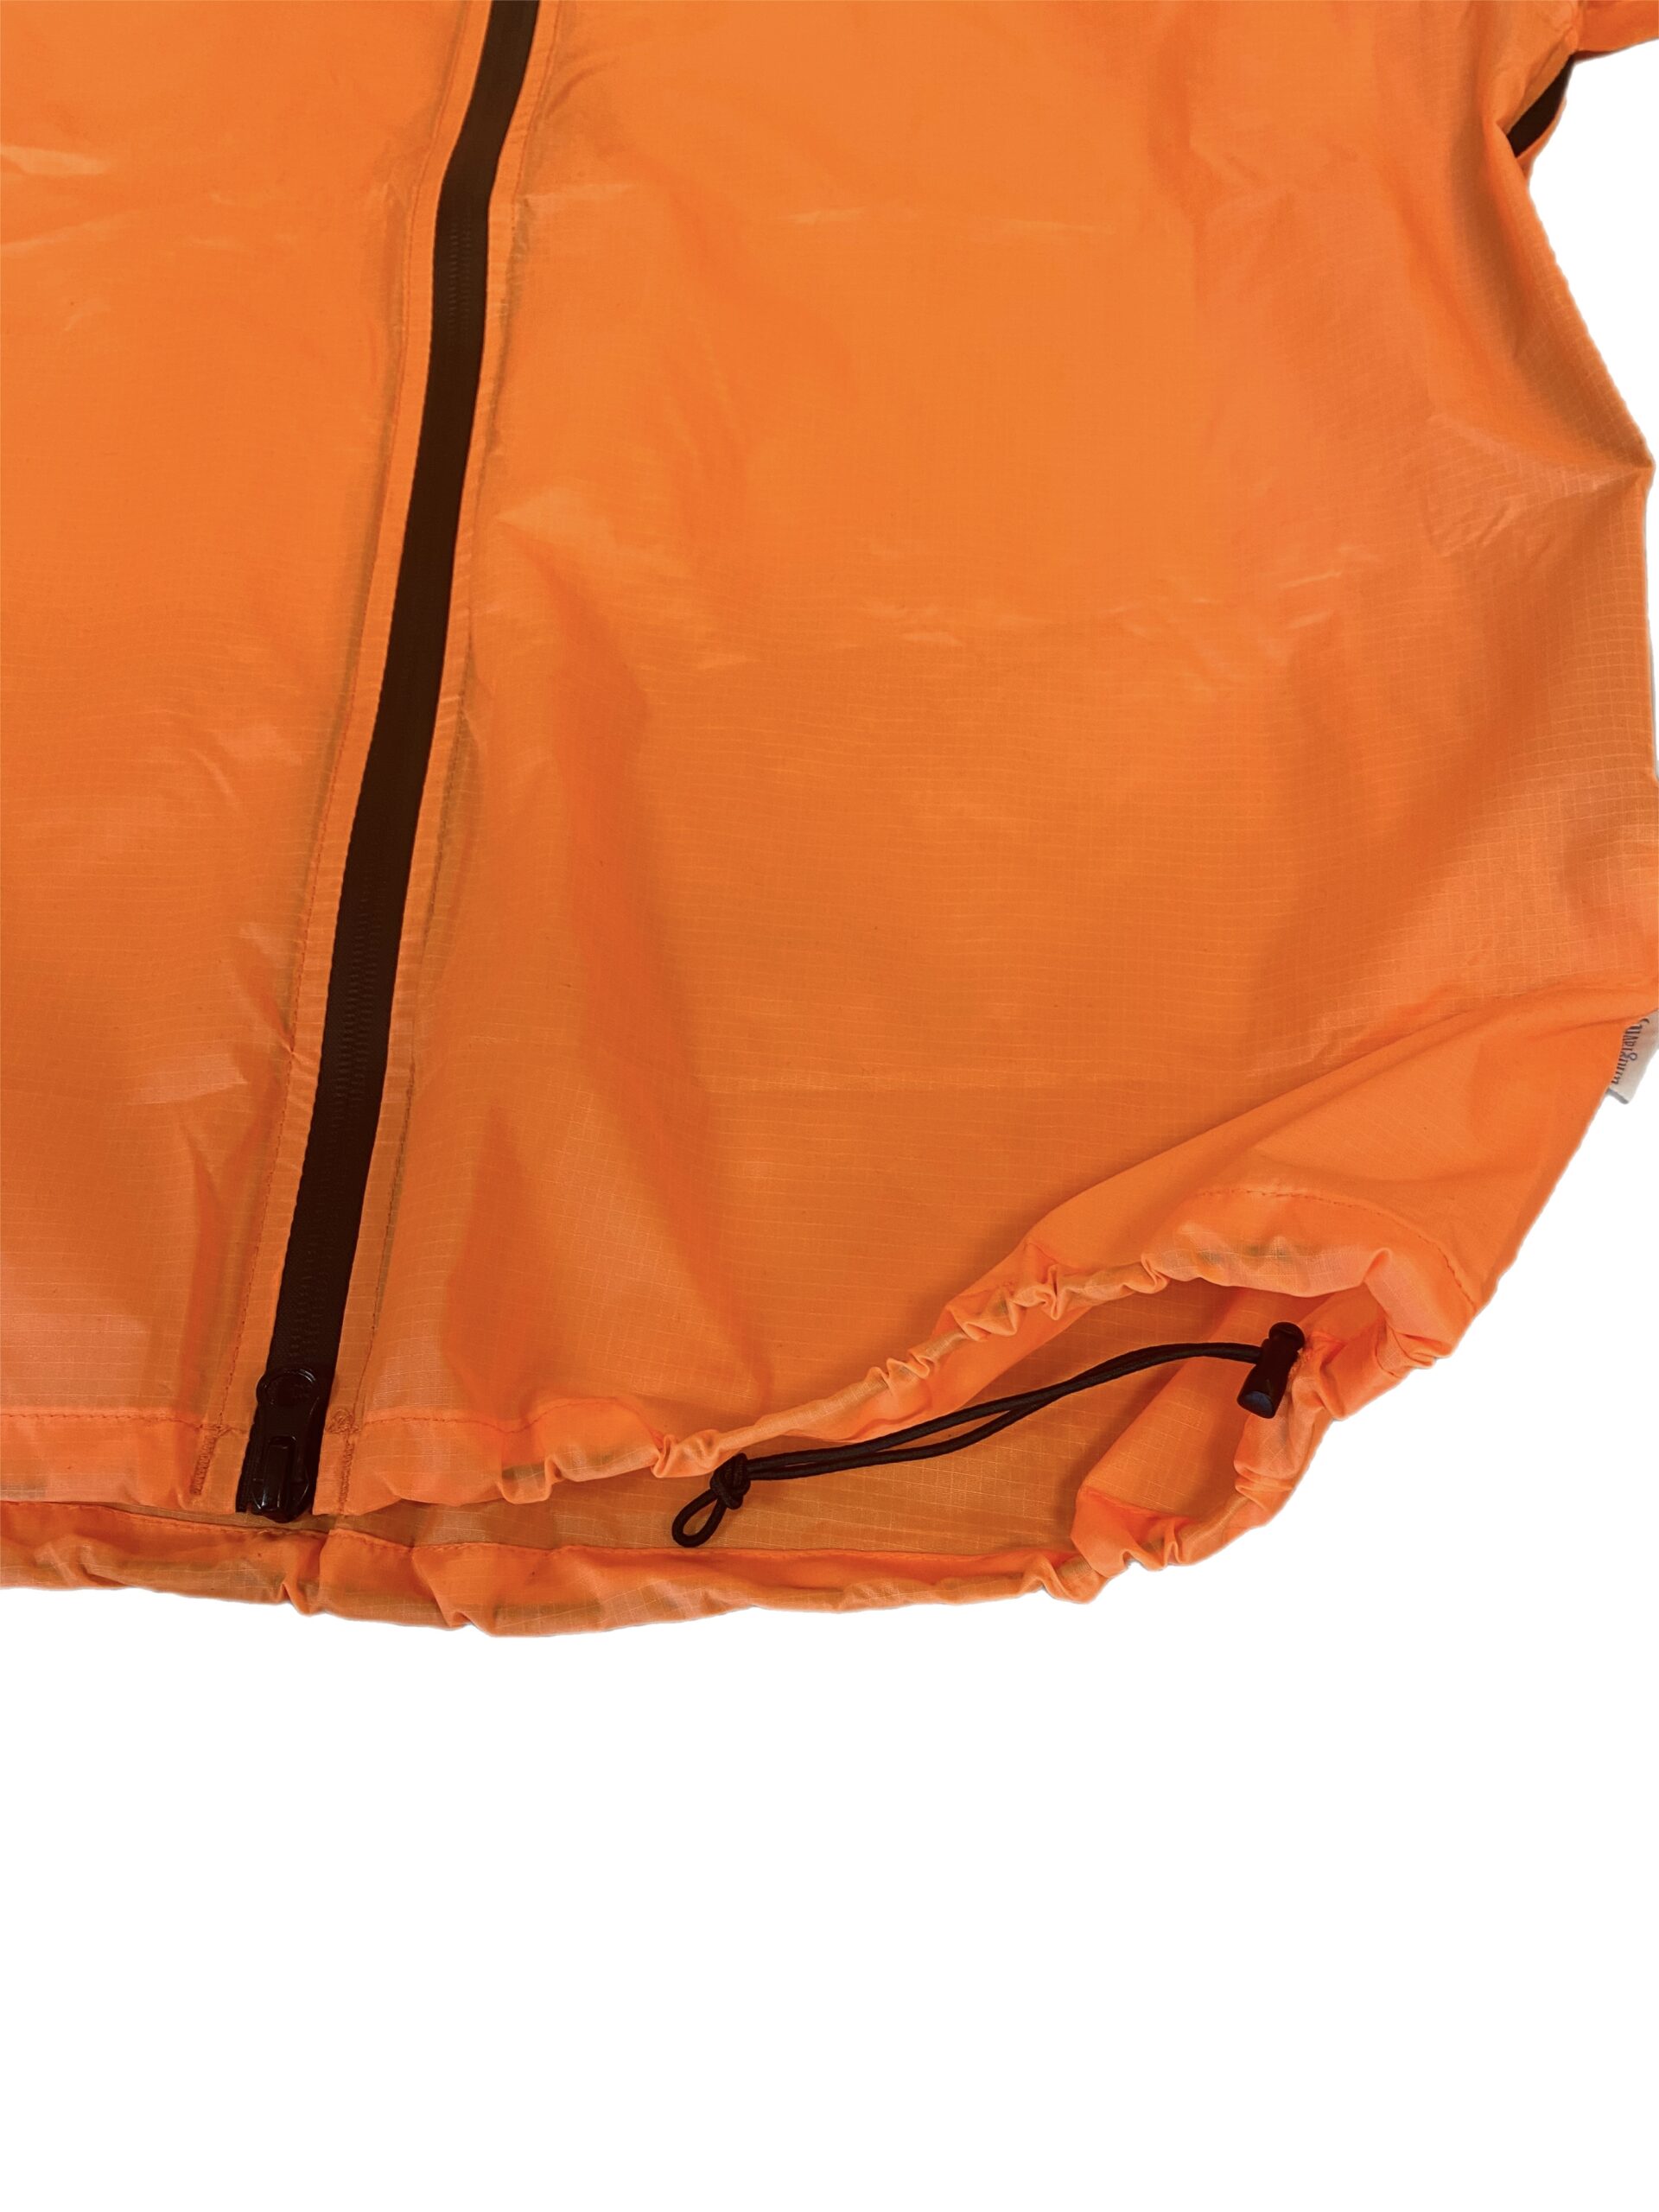 2.0 AntiGravityGear Ultralight Rain Jacket w/ Pit Zips